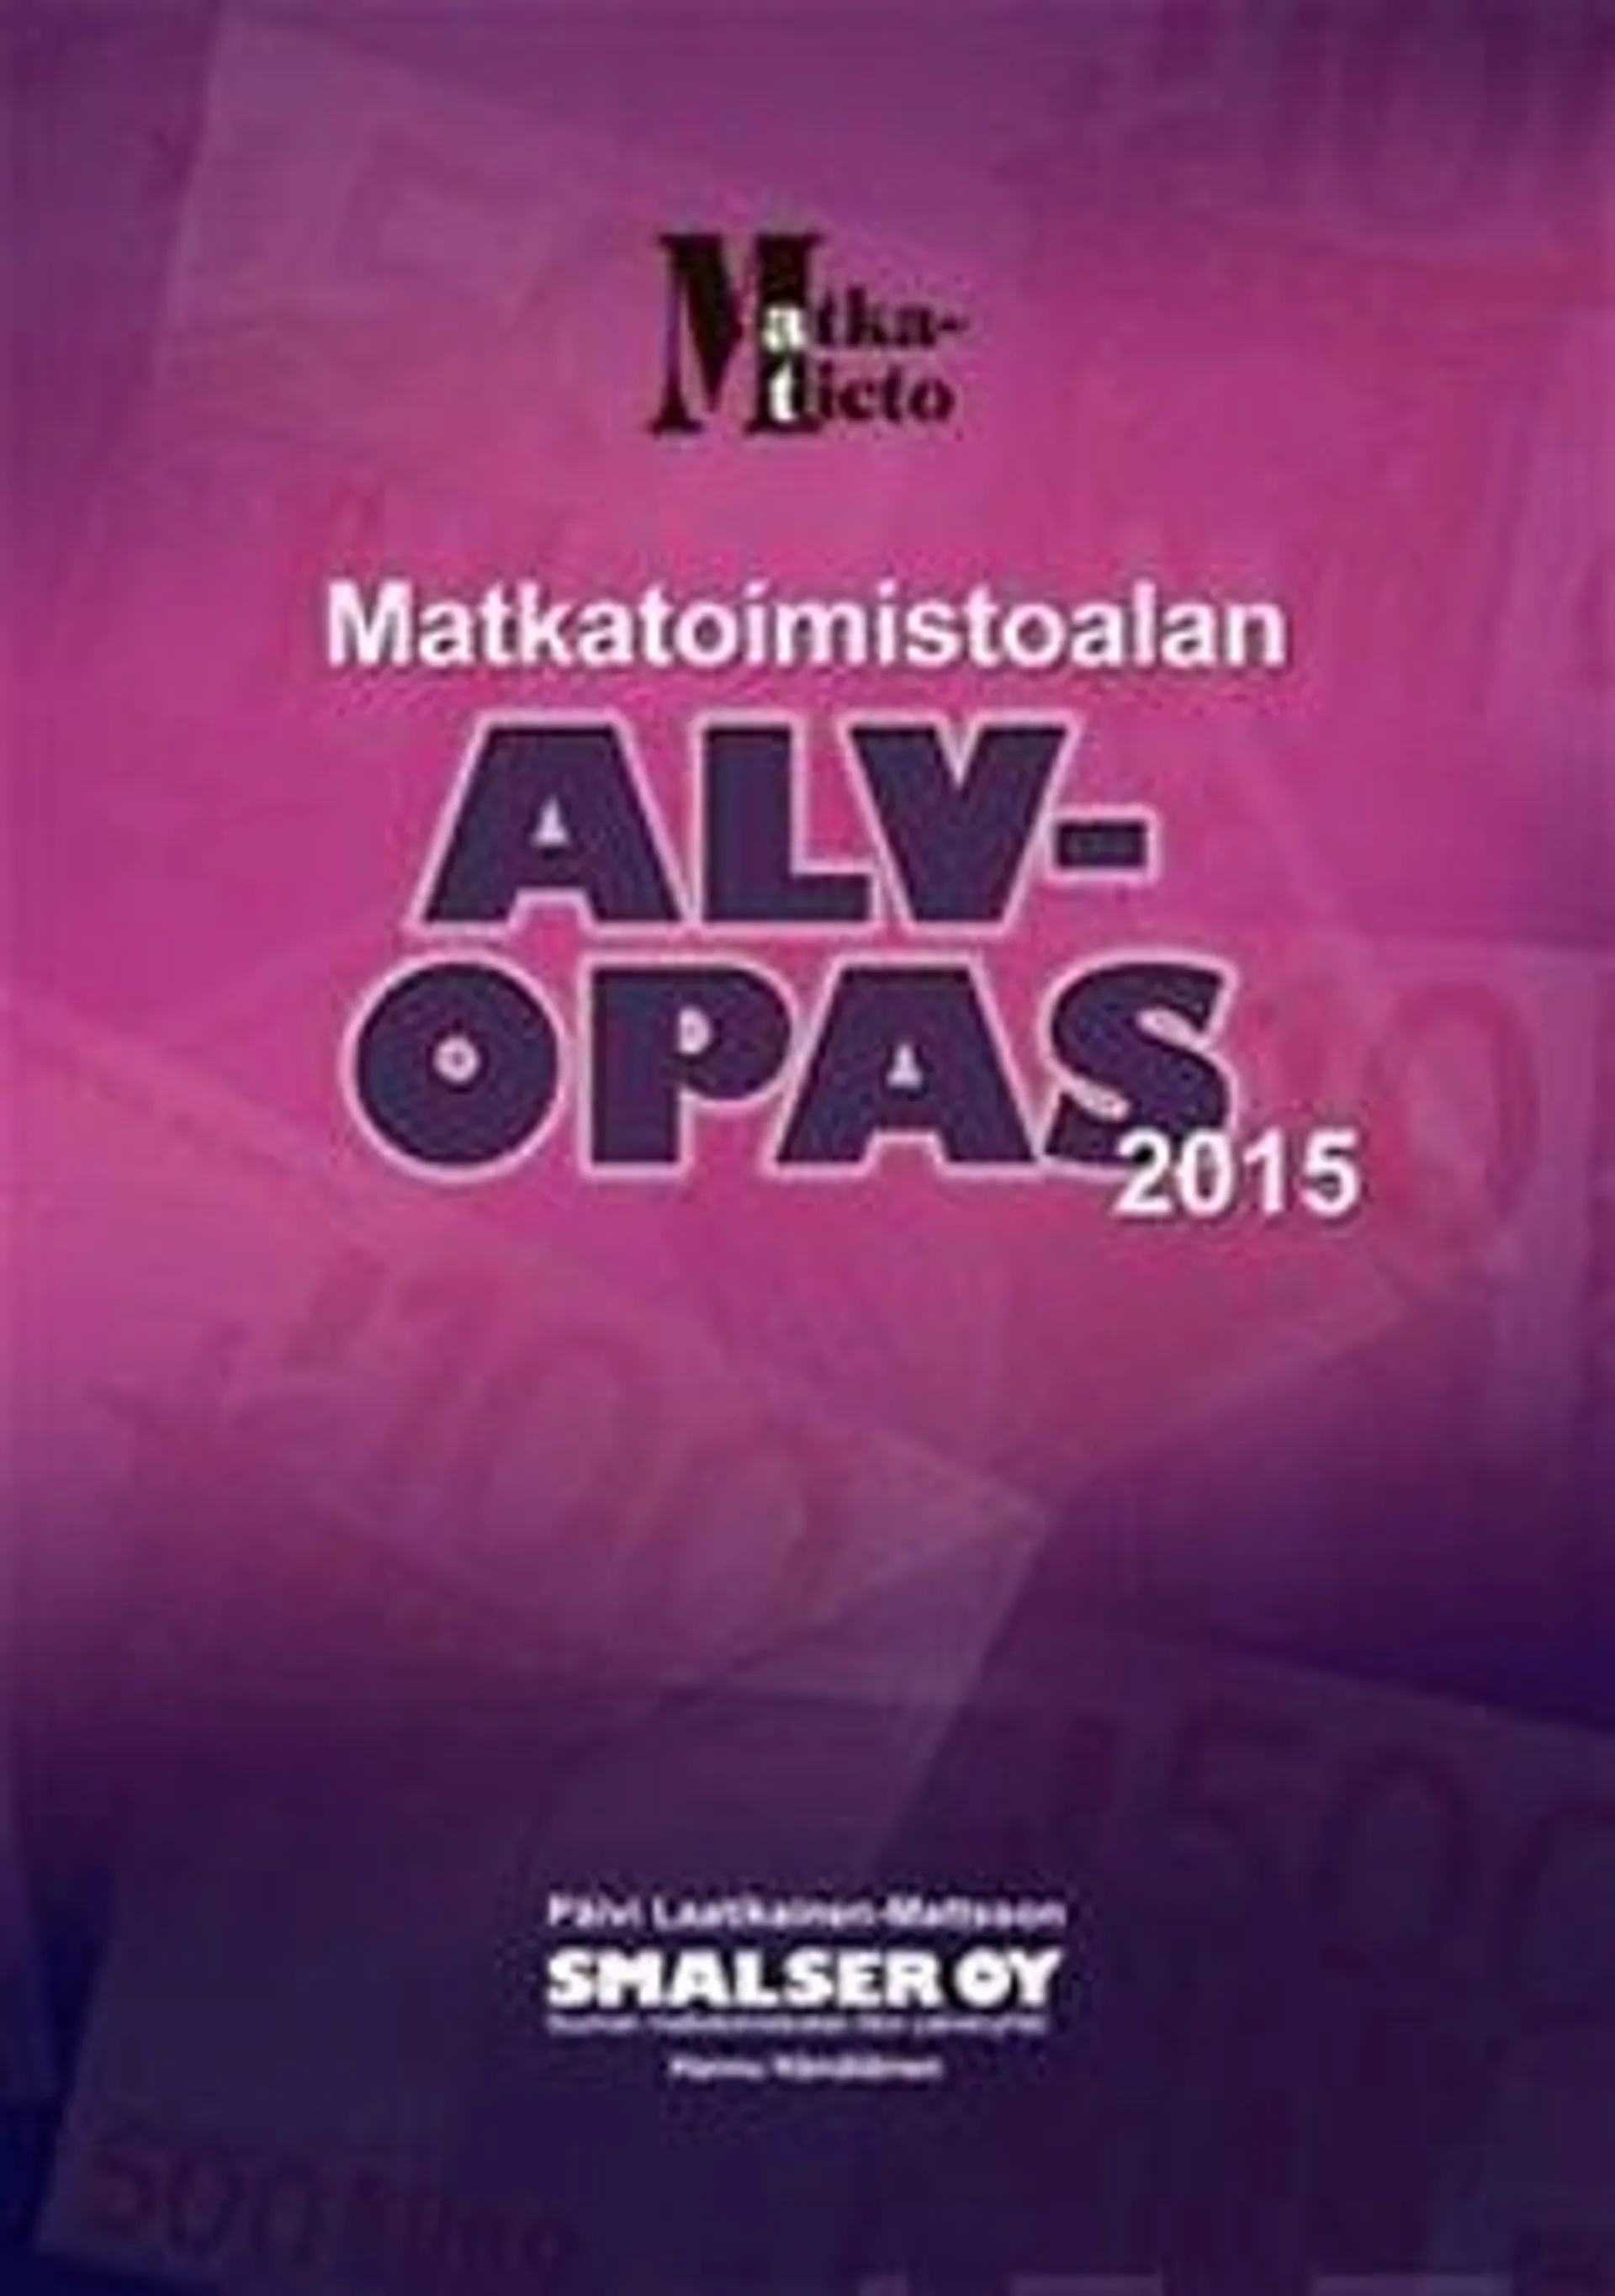 Laatikainen-Mattsson, Matkatoimistoalan alv-opas 2015